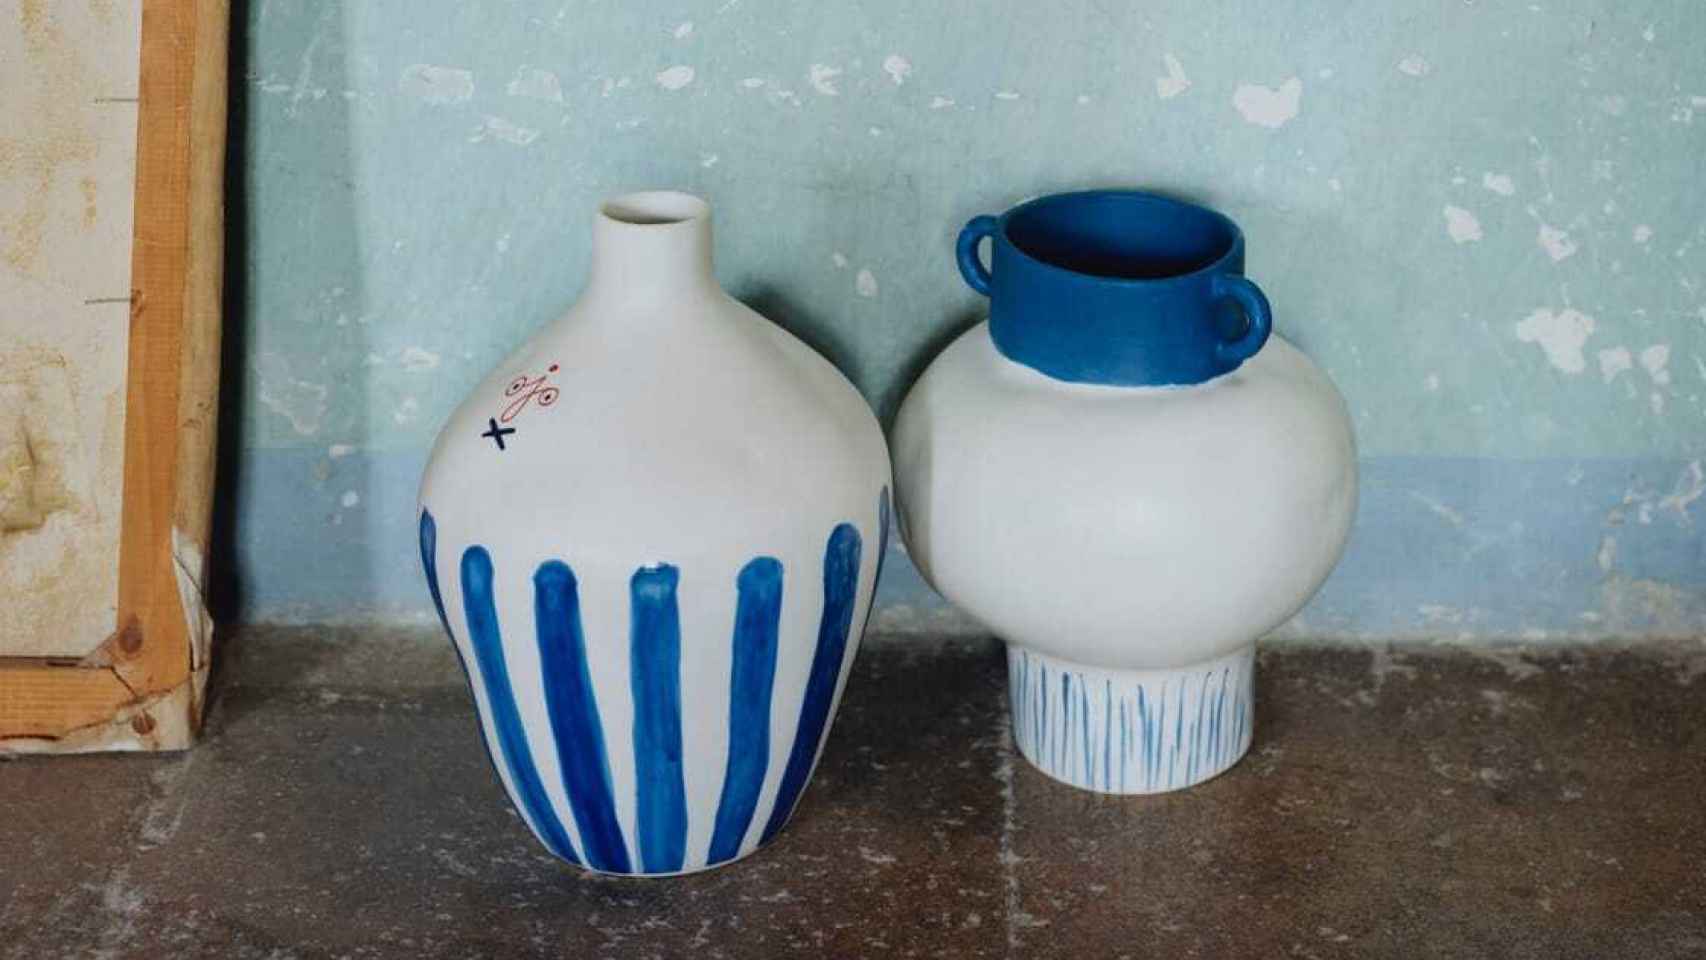 Las cerámicas adquieren mucho protagonismo en la colección.